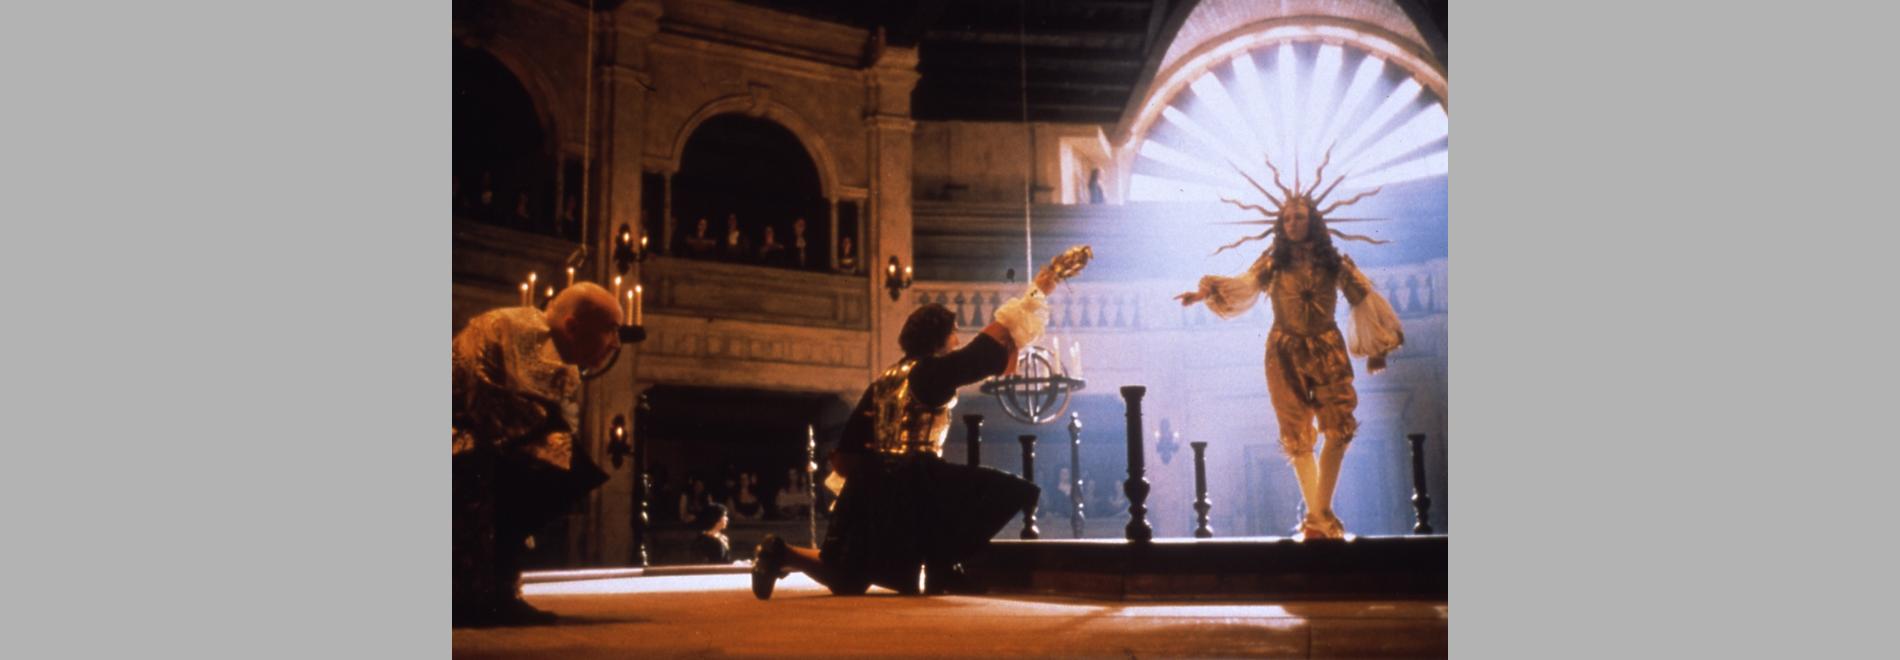 Le Roi danse (Gérard Corbiau, 2000)